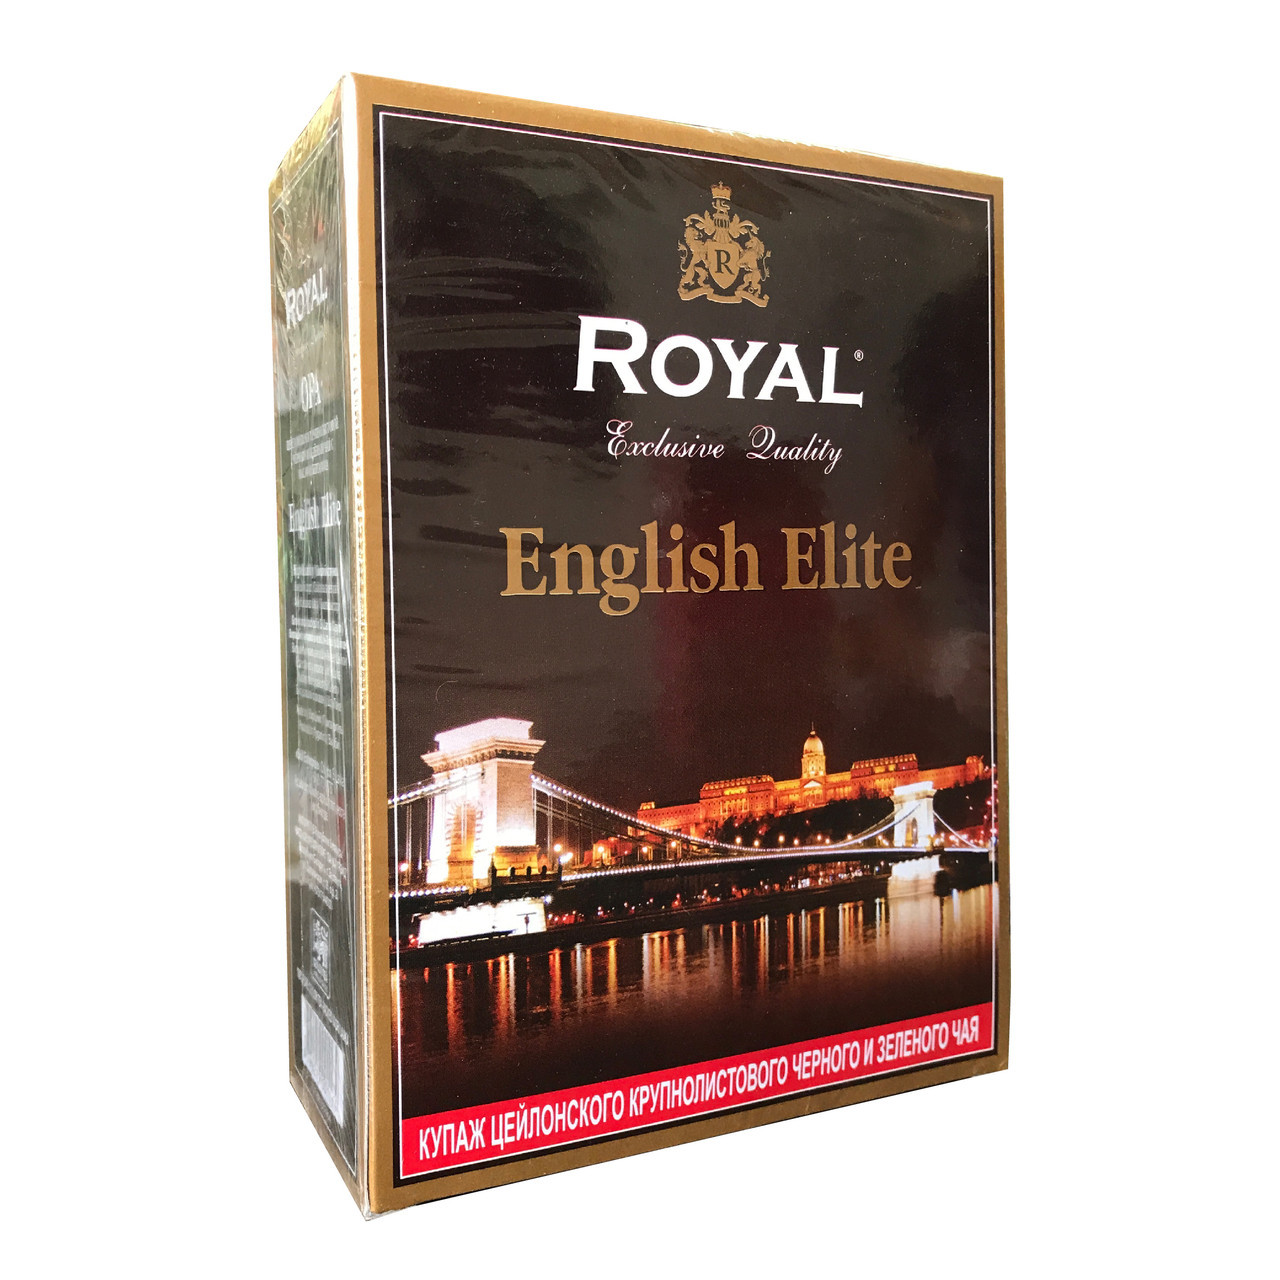 Чай Royal "English Elite" черный и зелёный чай с маслом бергамота, 100 г